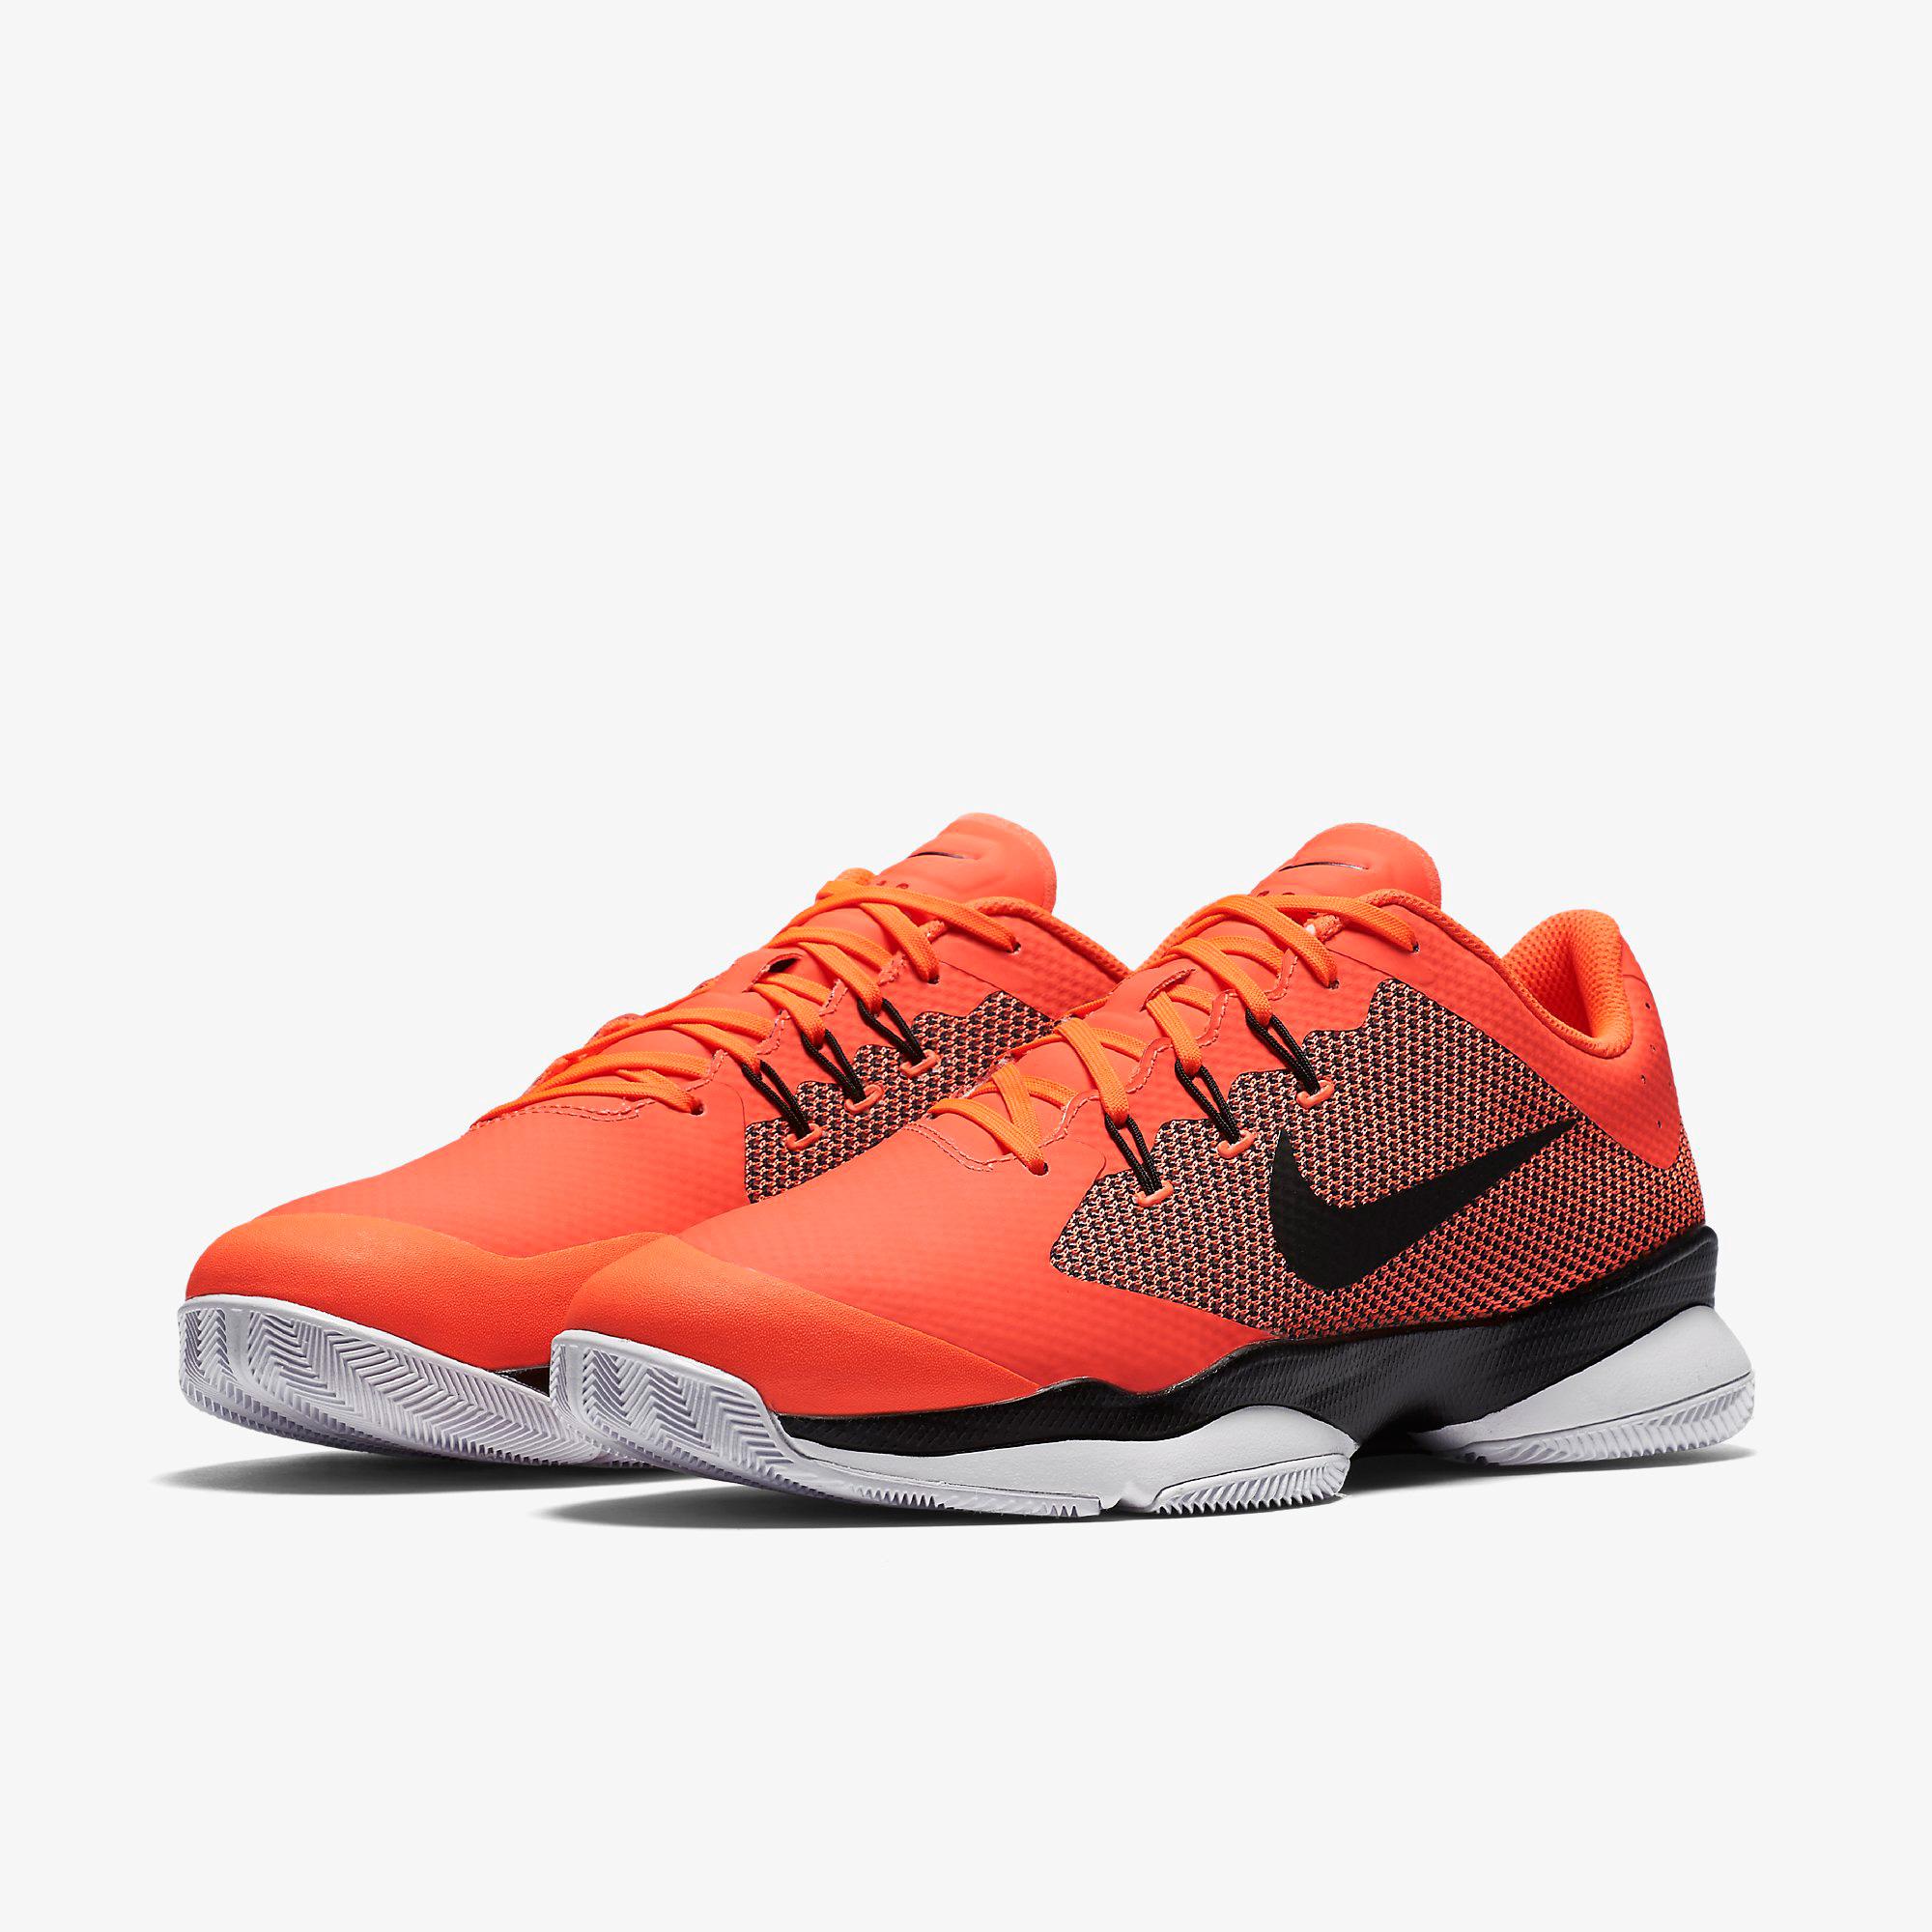 orange nike zoom shoes